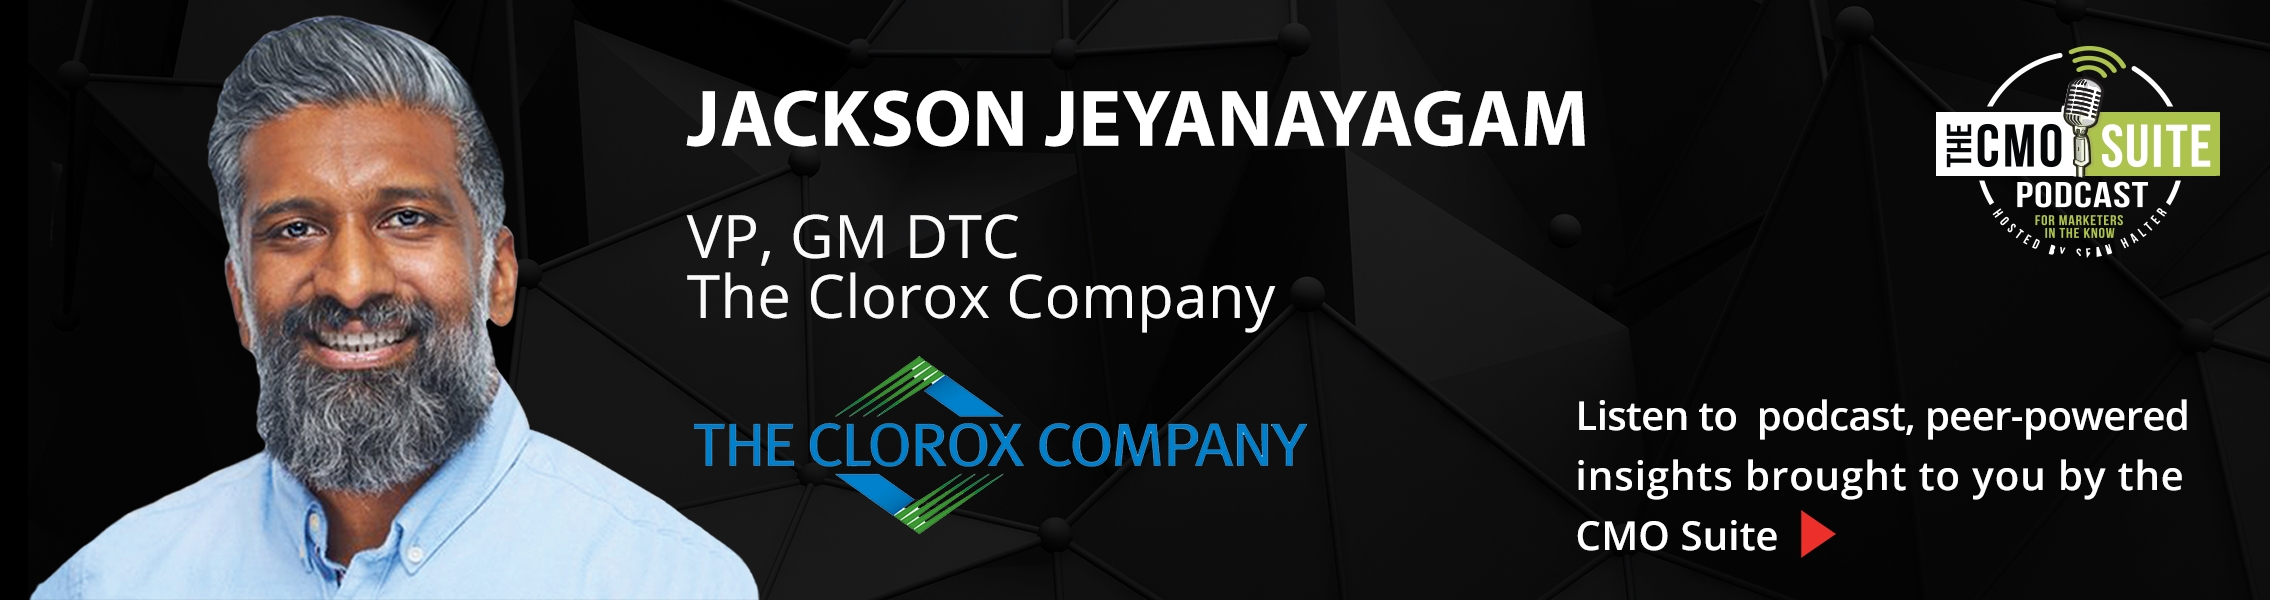 Listen to podcast - Jackson Jeyanayagam, The Clorox Company